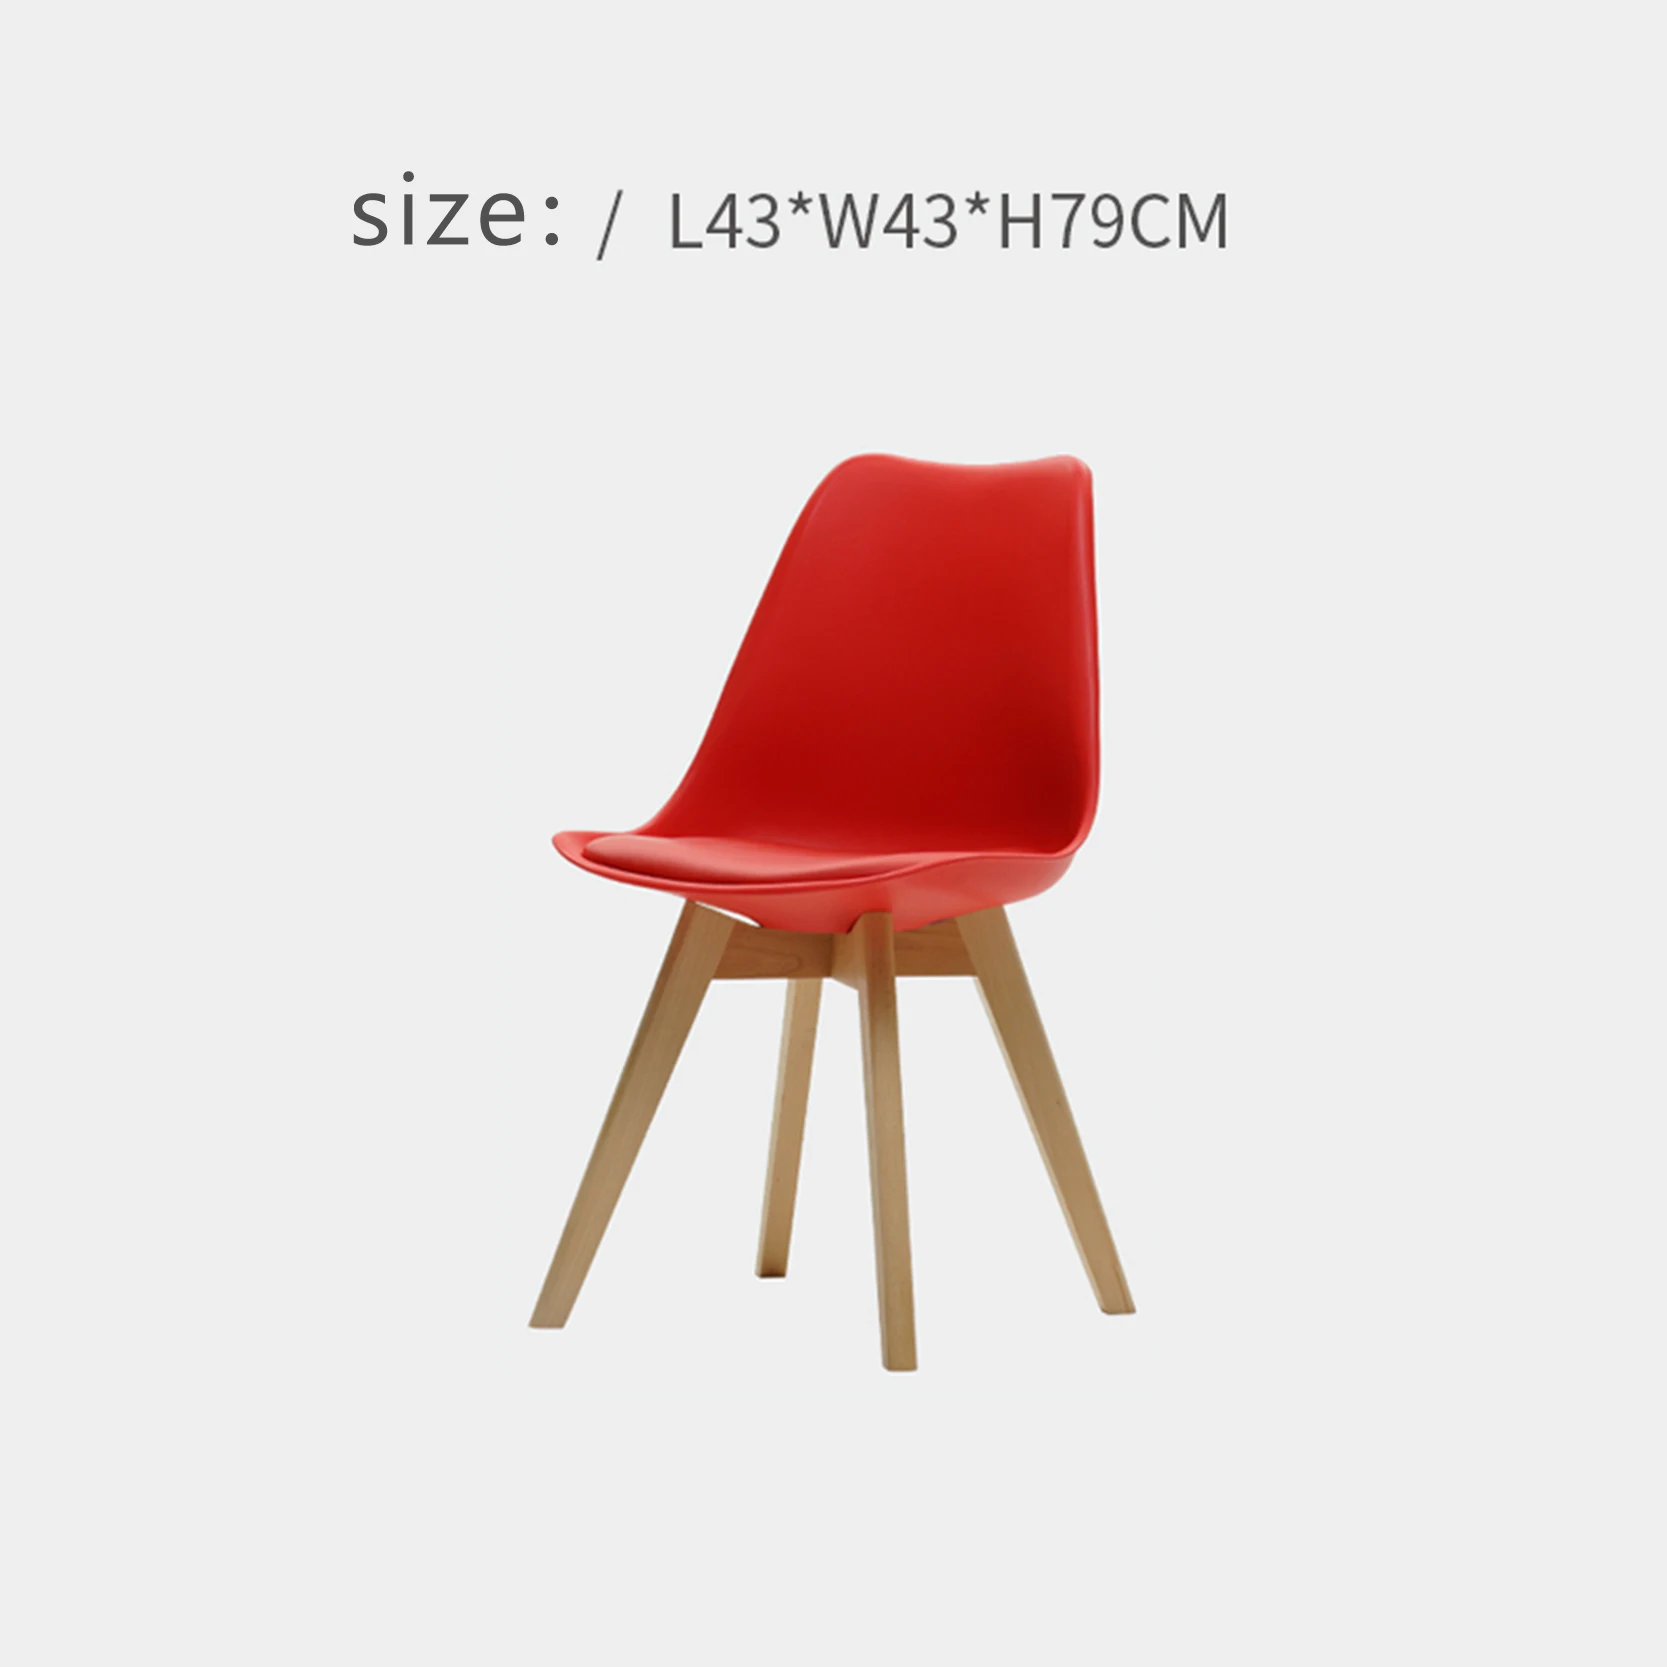 Обеденный стул из цельного дерева минимализм мебель современный отдых нордический домашний стол спинка стул гостиная Кофейня встречи - Цвет: Red